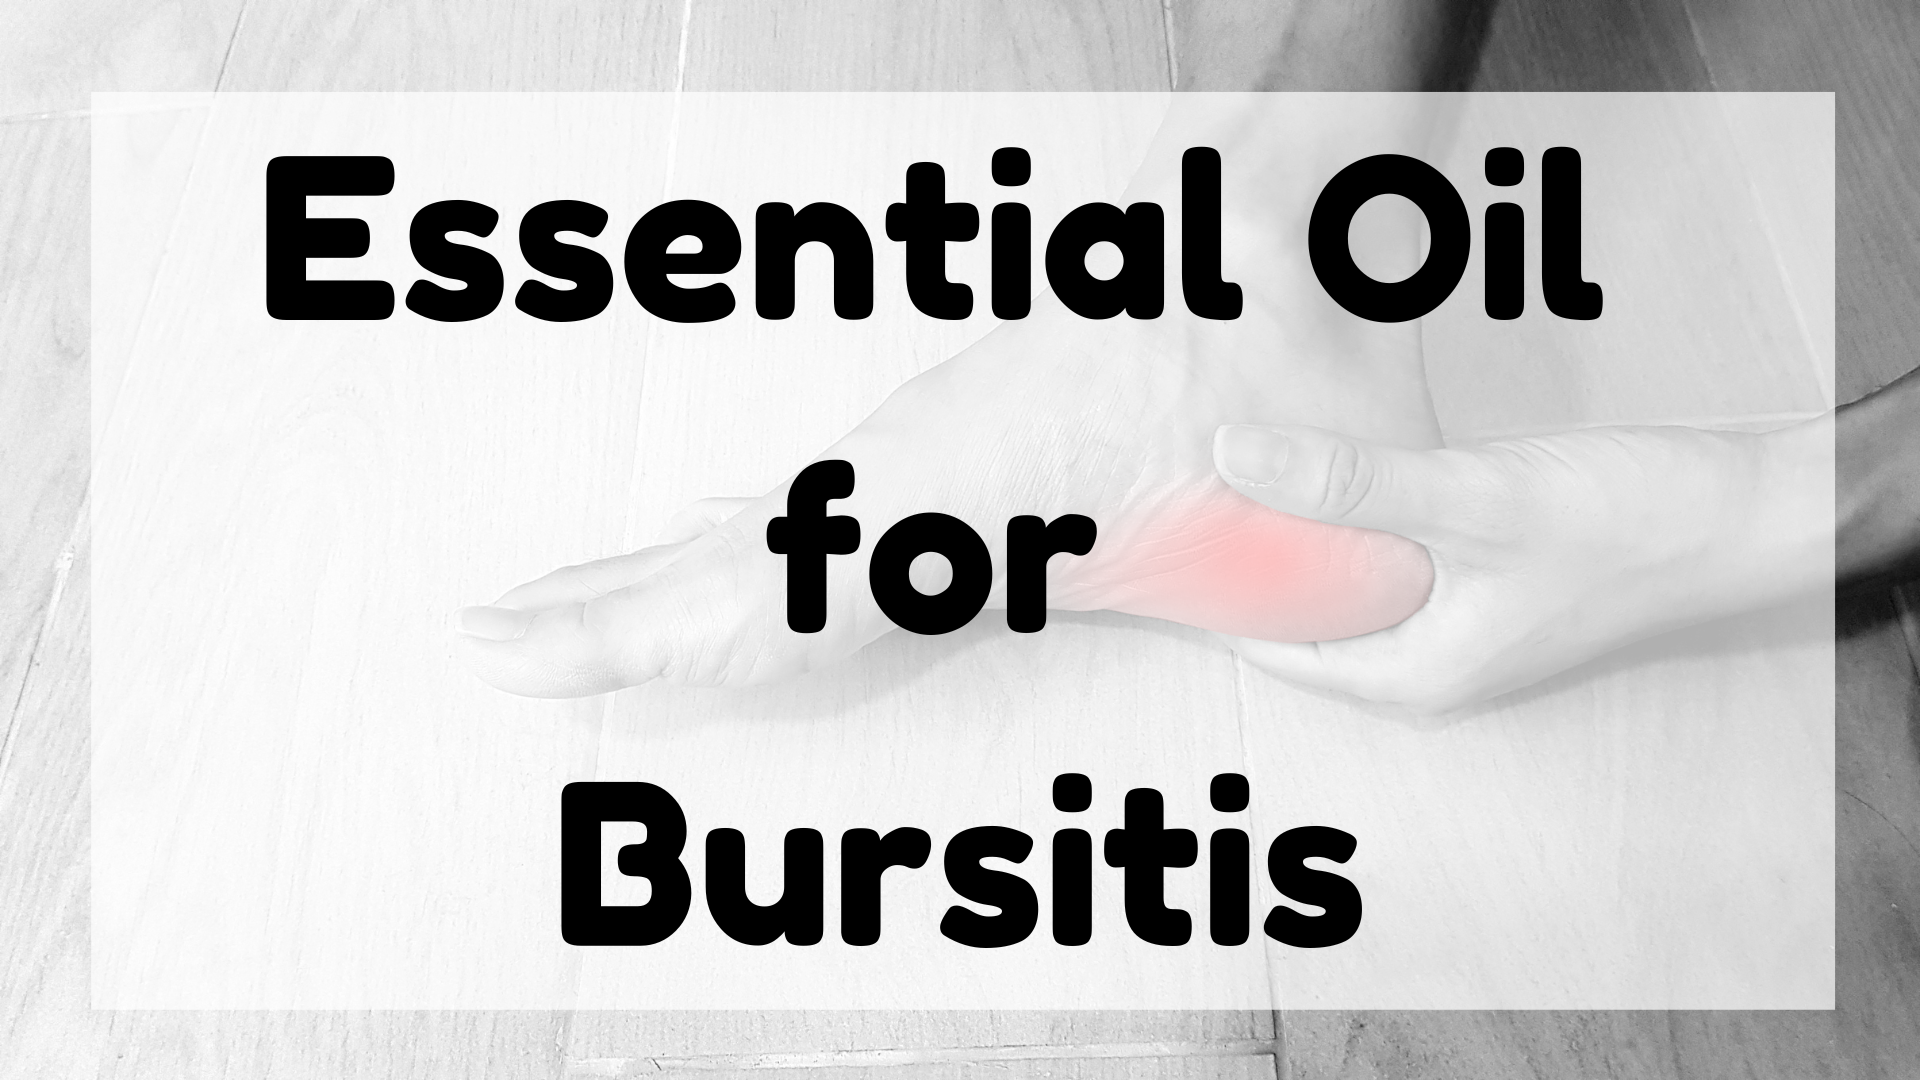 Essential Oil for Bursitis featured image